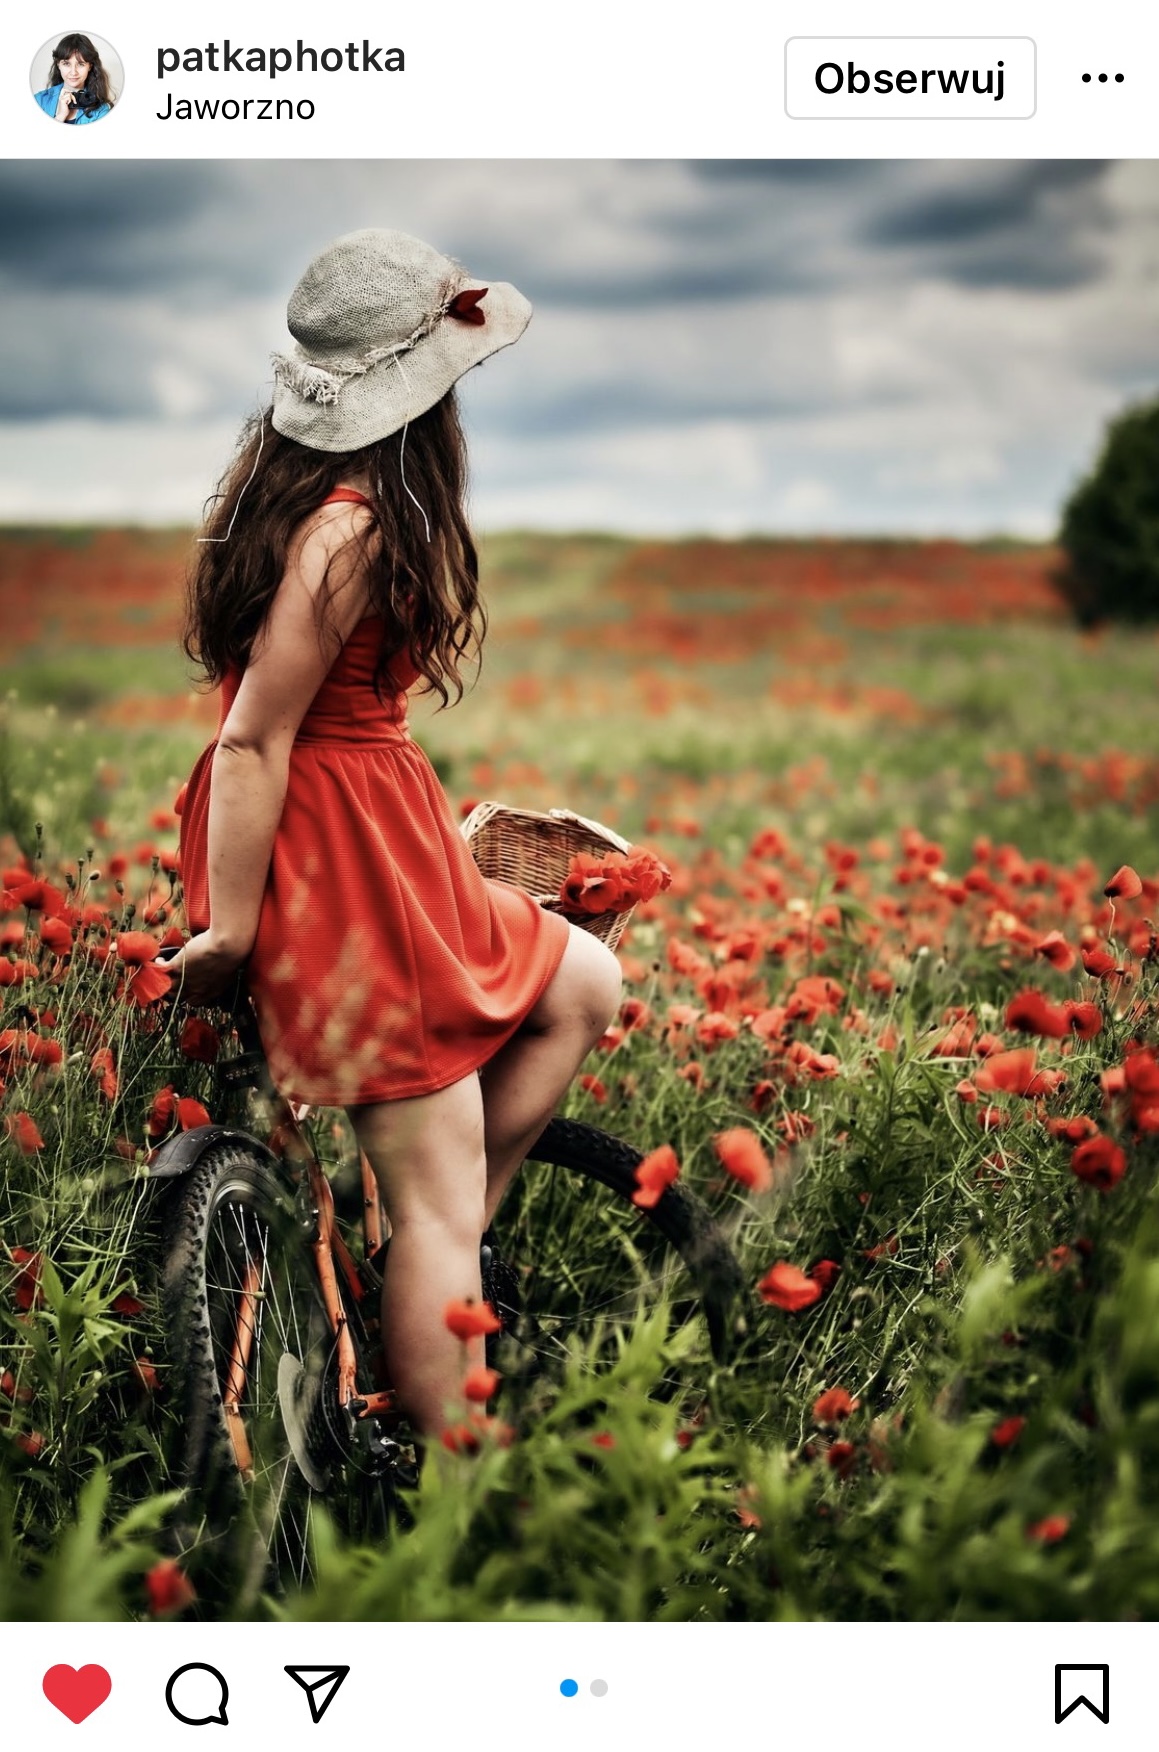 Dziewczyna na rowerze w czerwonej sukience pośród maków. Ma kapelusz. #śląsktakipiękny